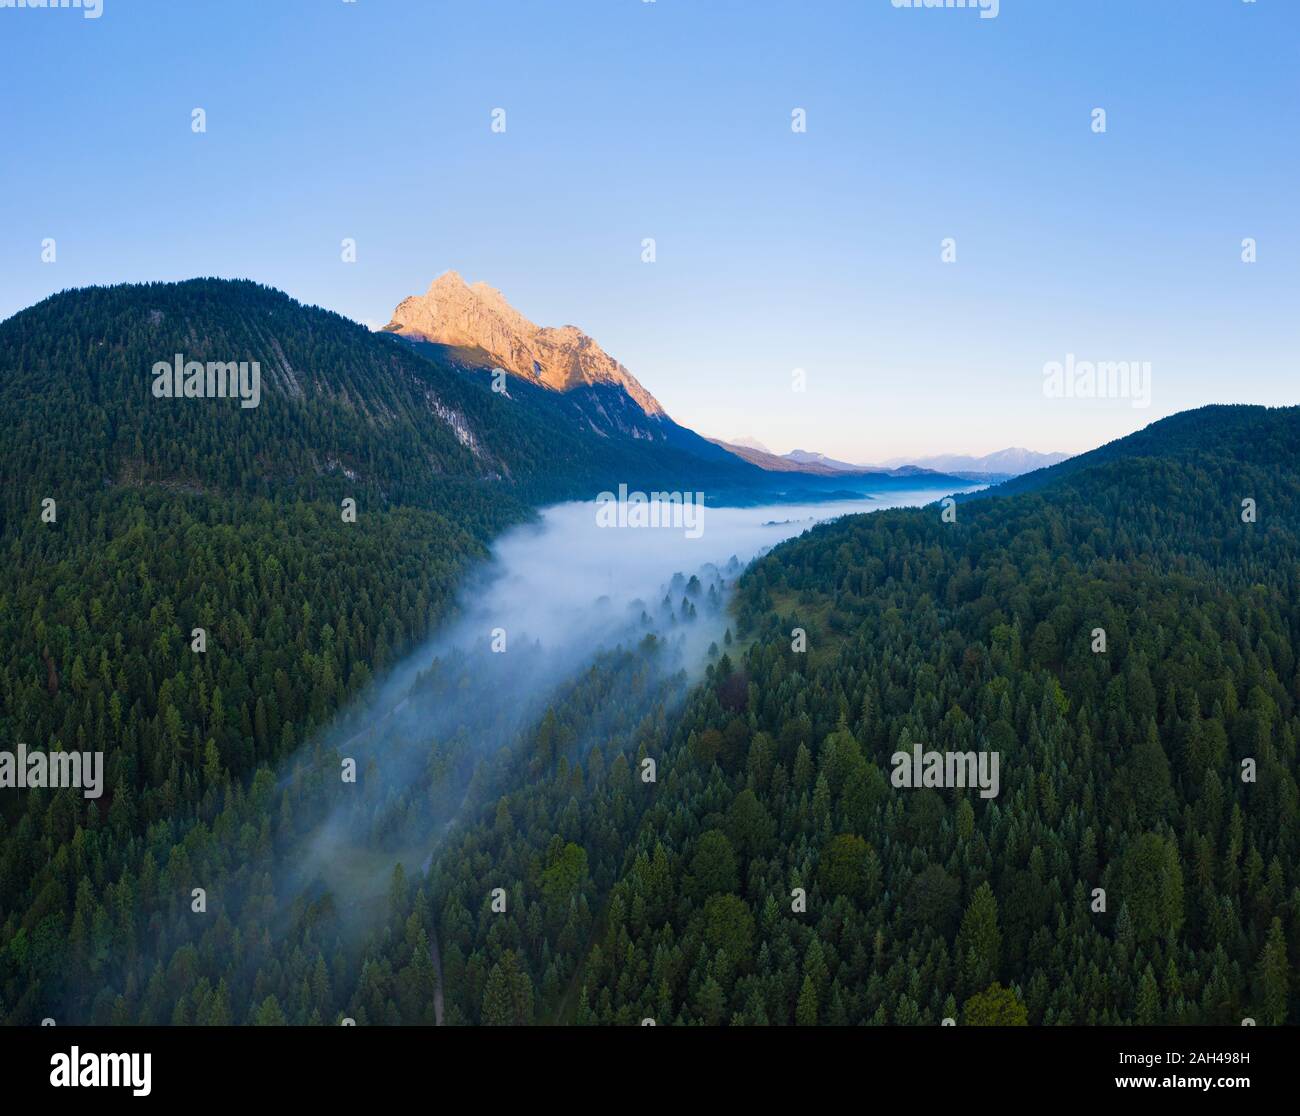 In Germania, in Baviera, Mittenwald, vista aerea del lago Ferchensee avvolta nella nebbia mattutina Foto Stock